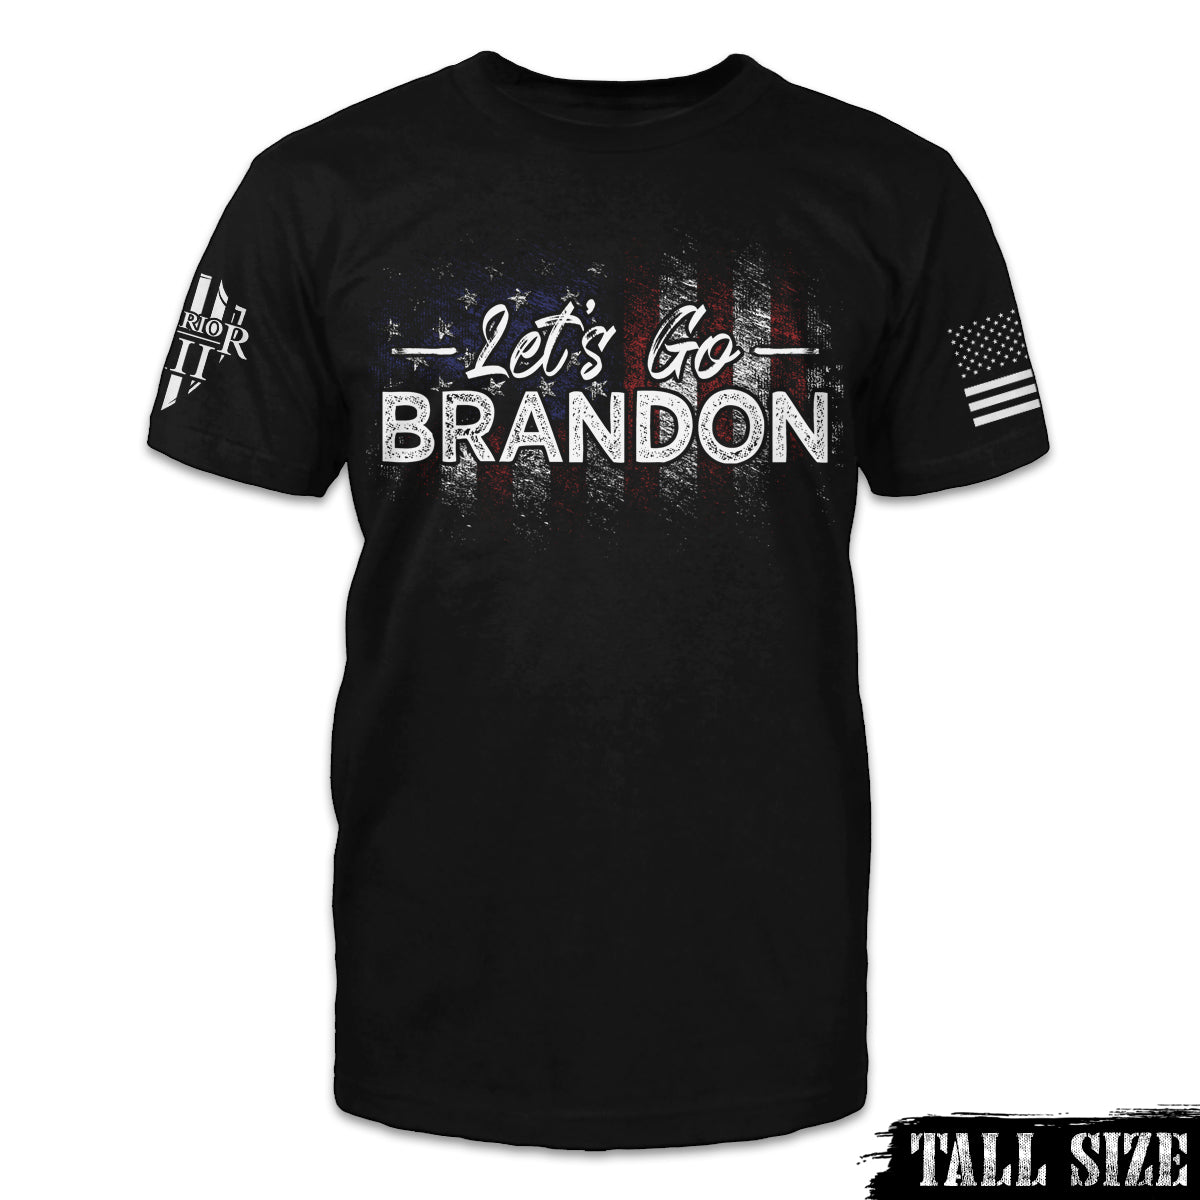 Let's Go Brandon - Warrior 12 - A Patriotic Apparel Company